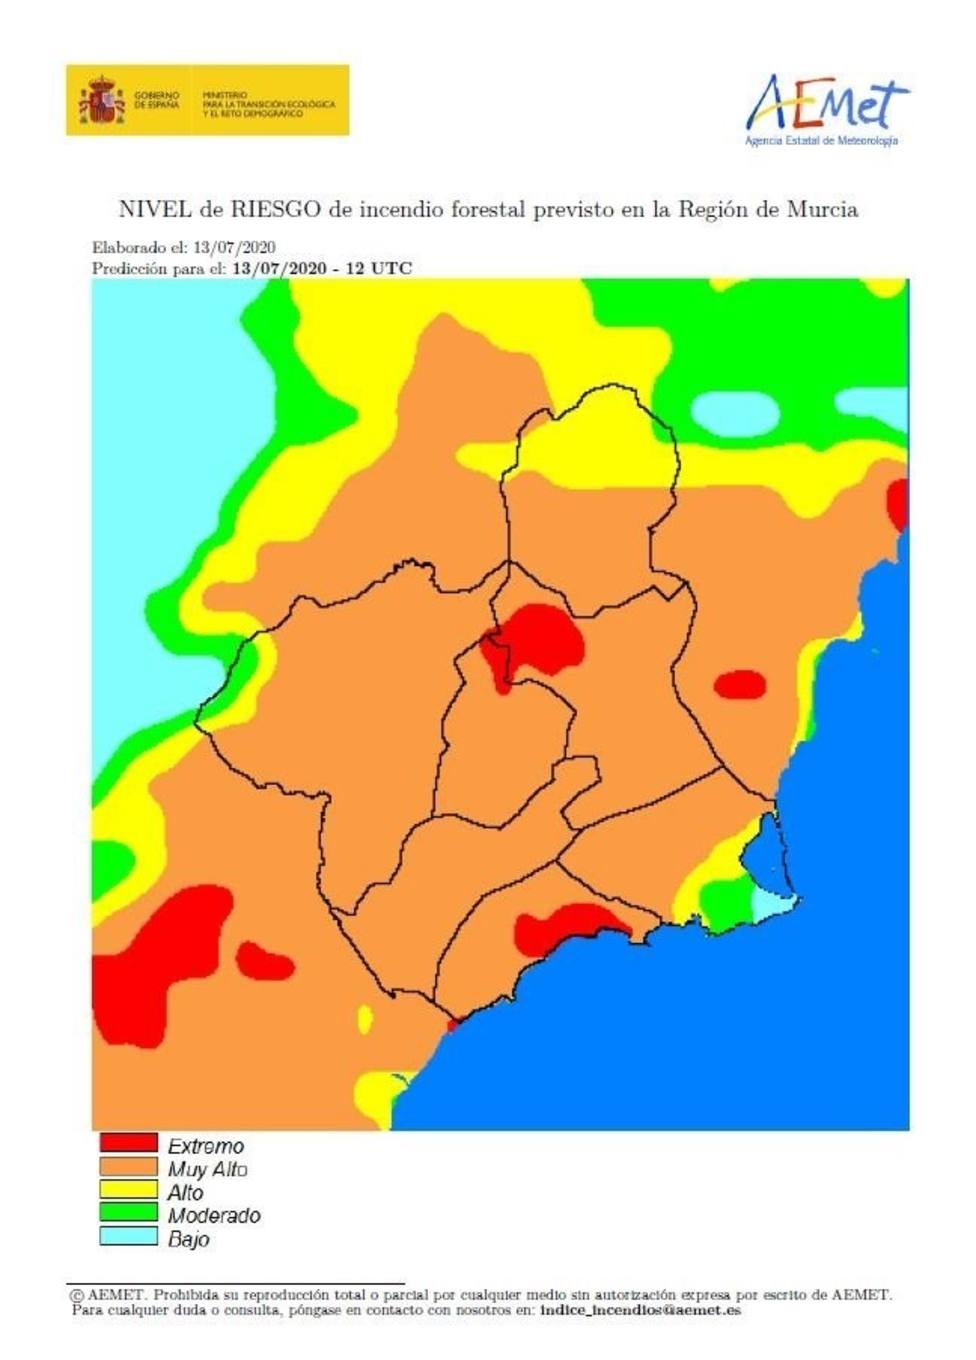 El nivel de riesgo de incendio forestal previsto este lunes es muy alto en casi toda la Región de Murcia